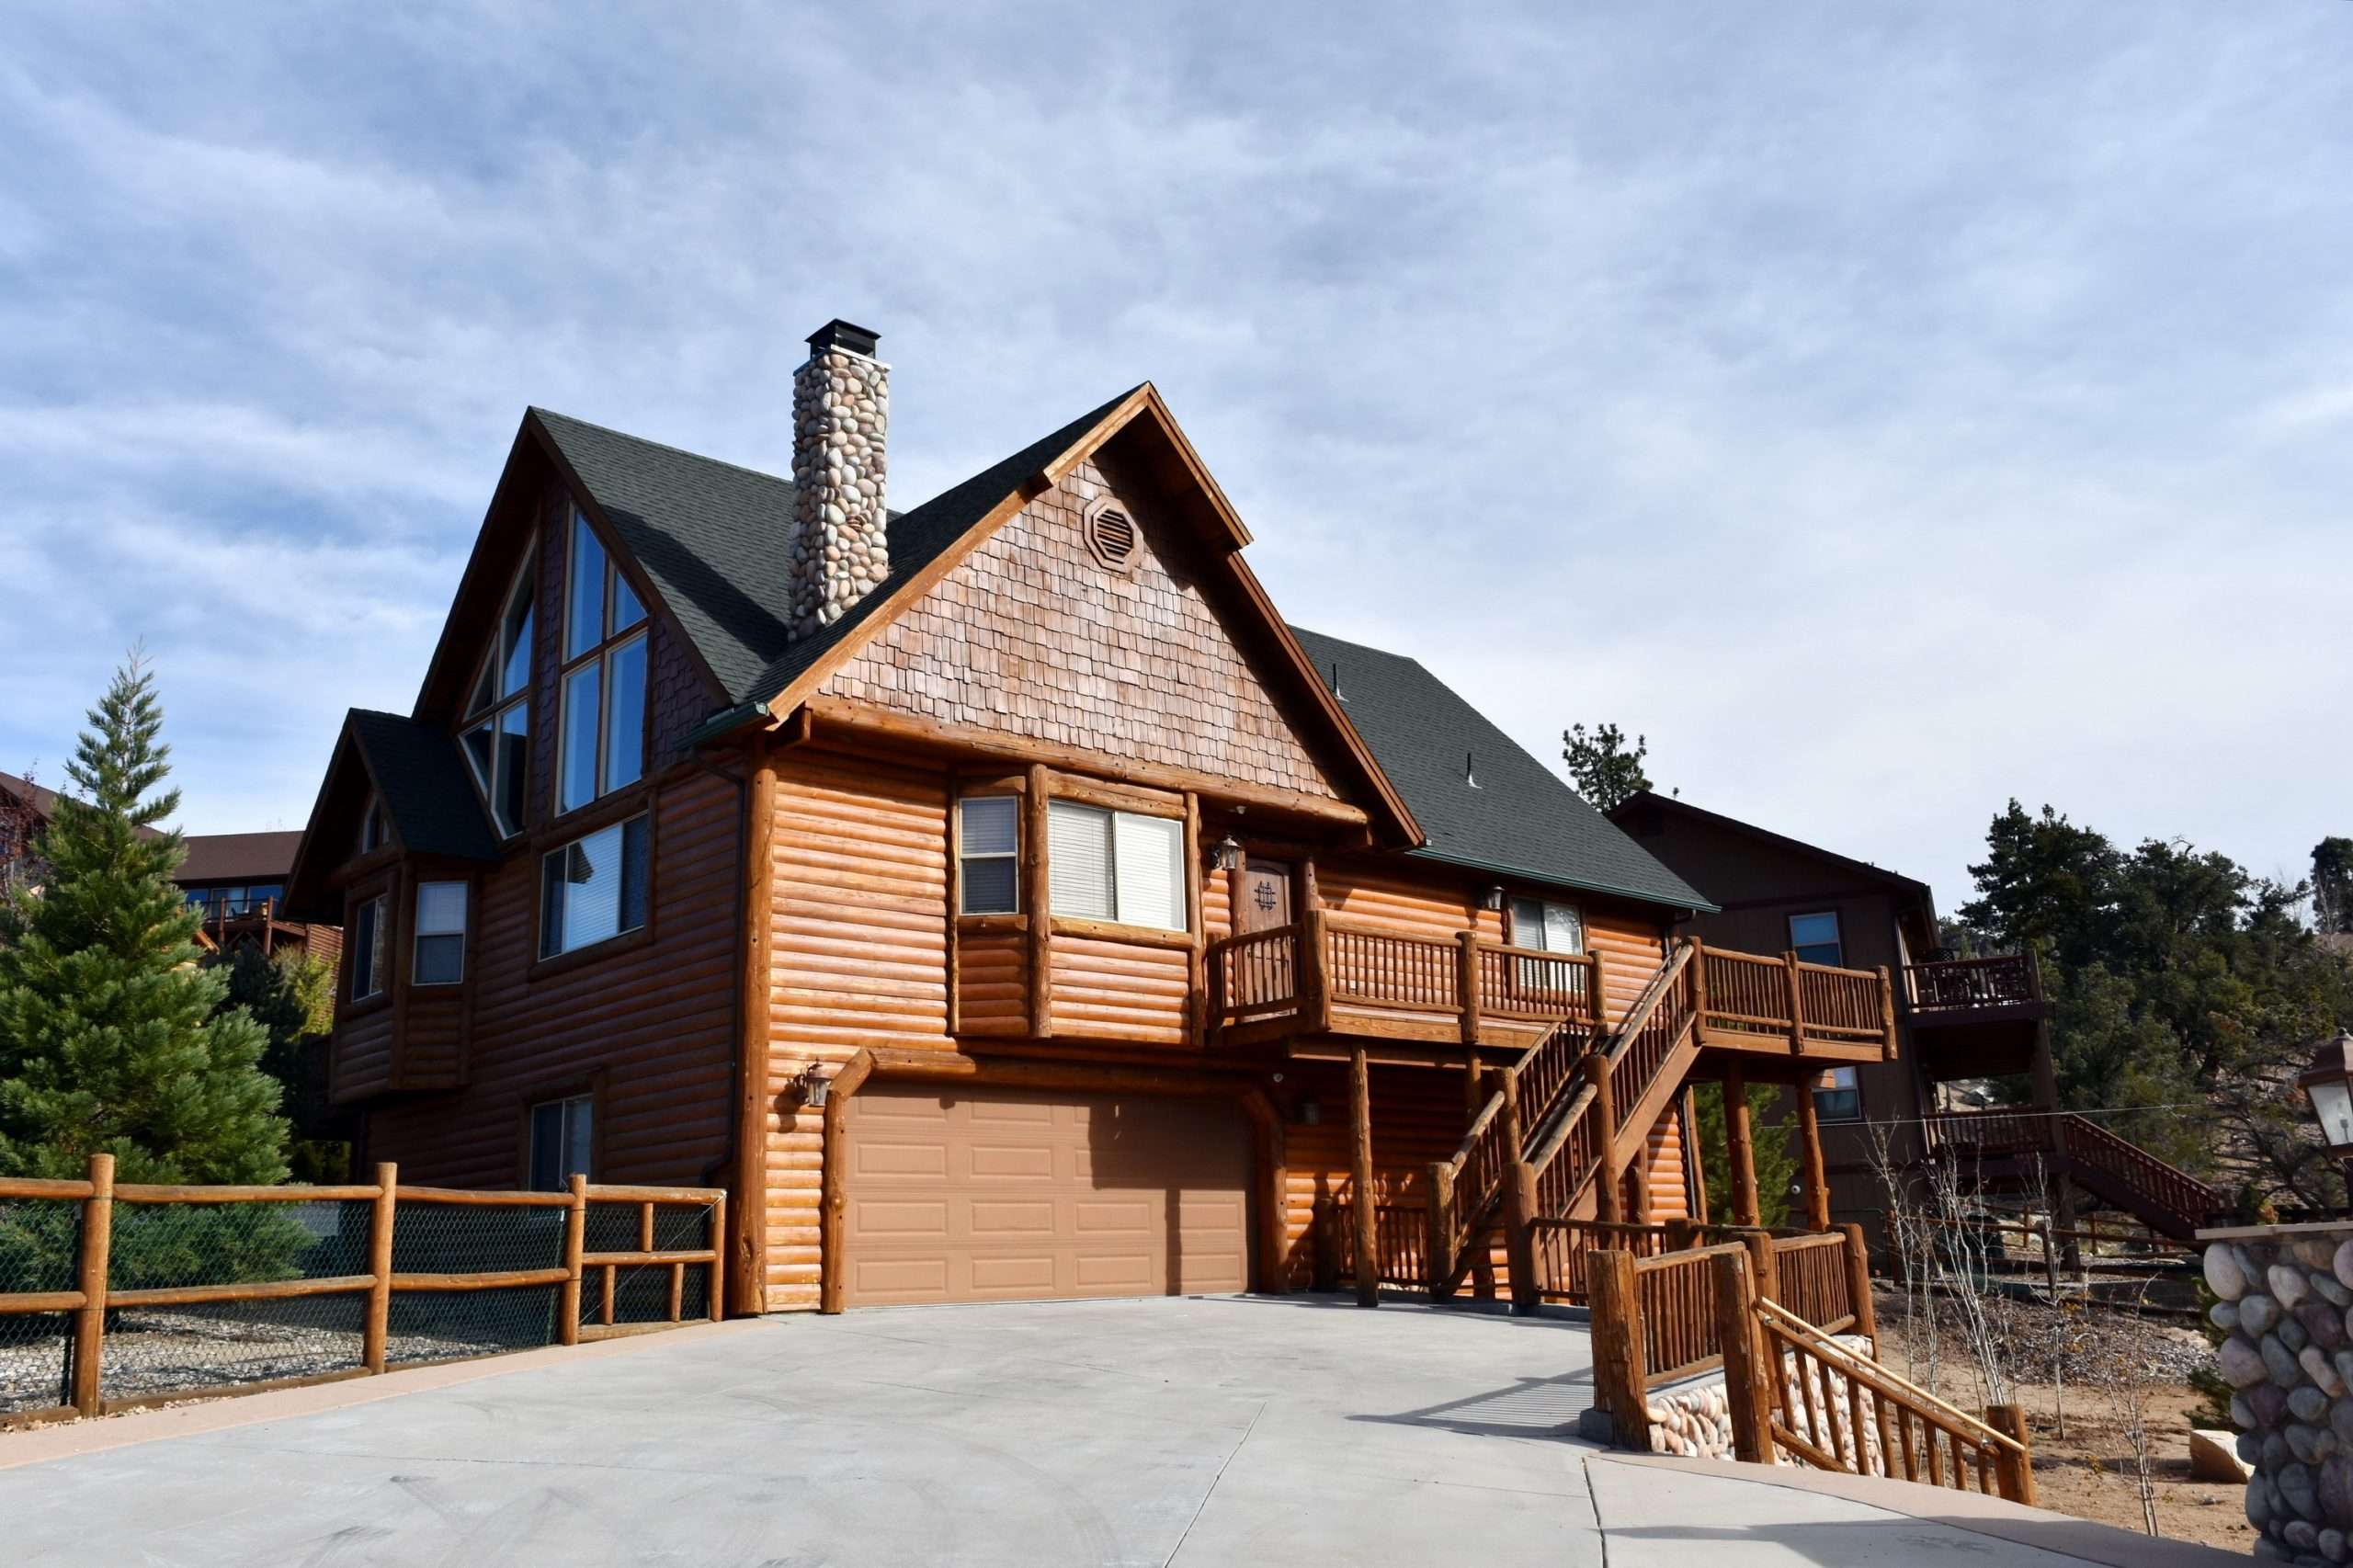 VACATION RENTALS IN BIG BEAR LAKE  Big Bear Property Services